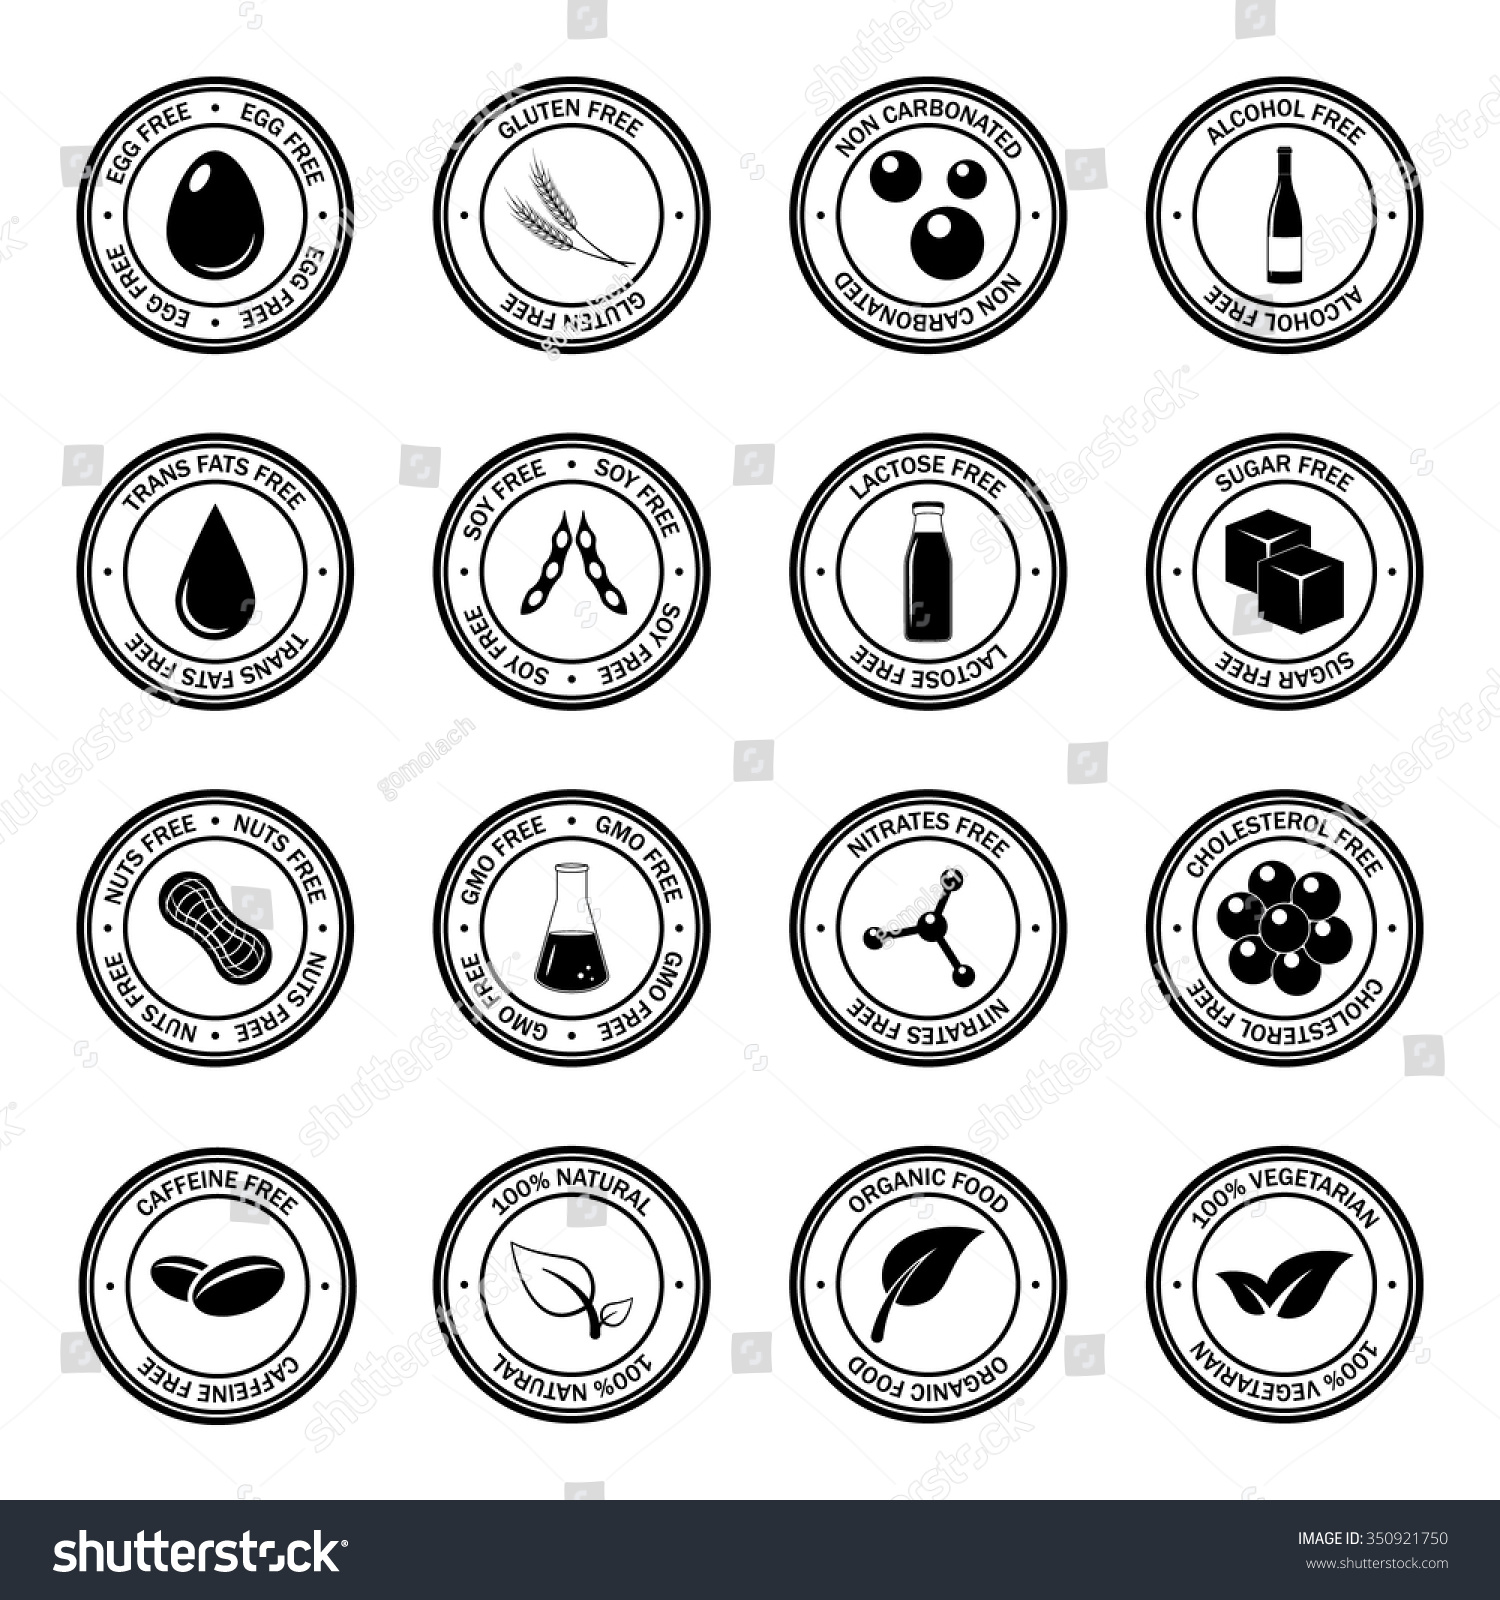 SVG of Food allergen icons set. Vector EPS8 illustration. svg